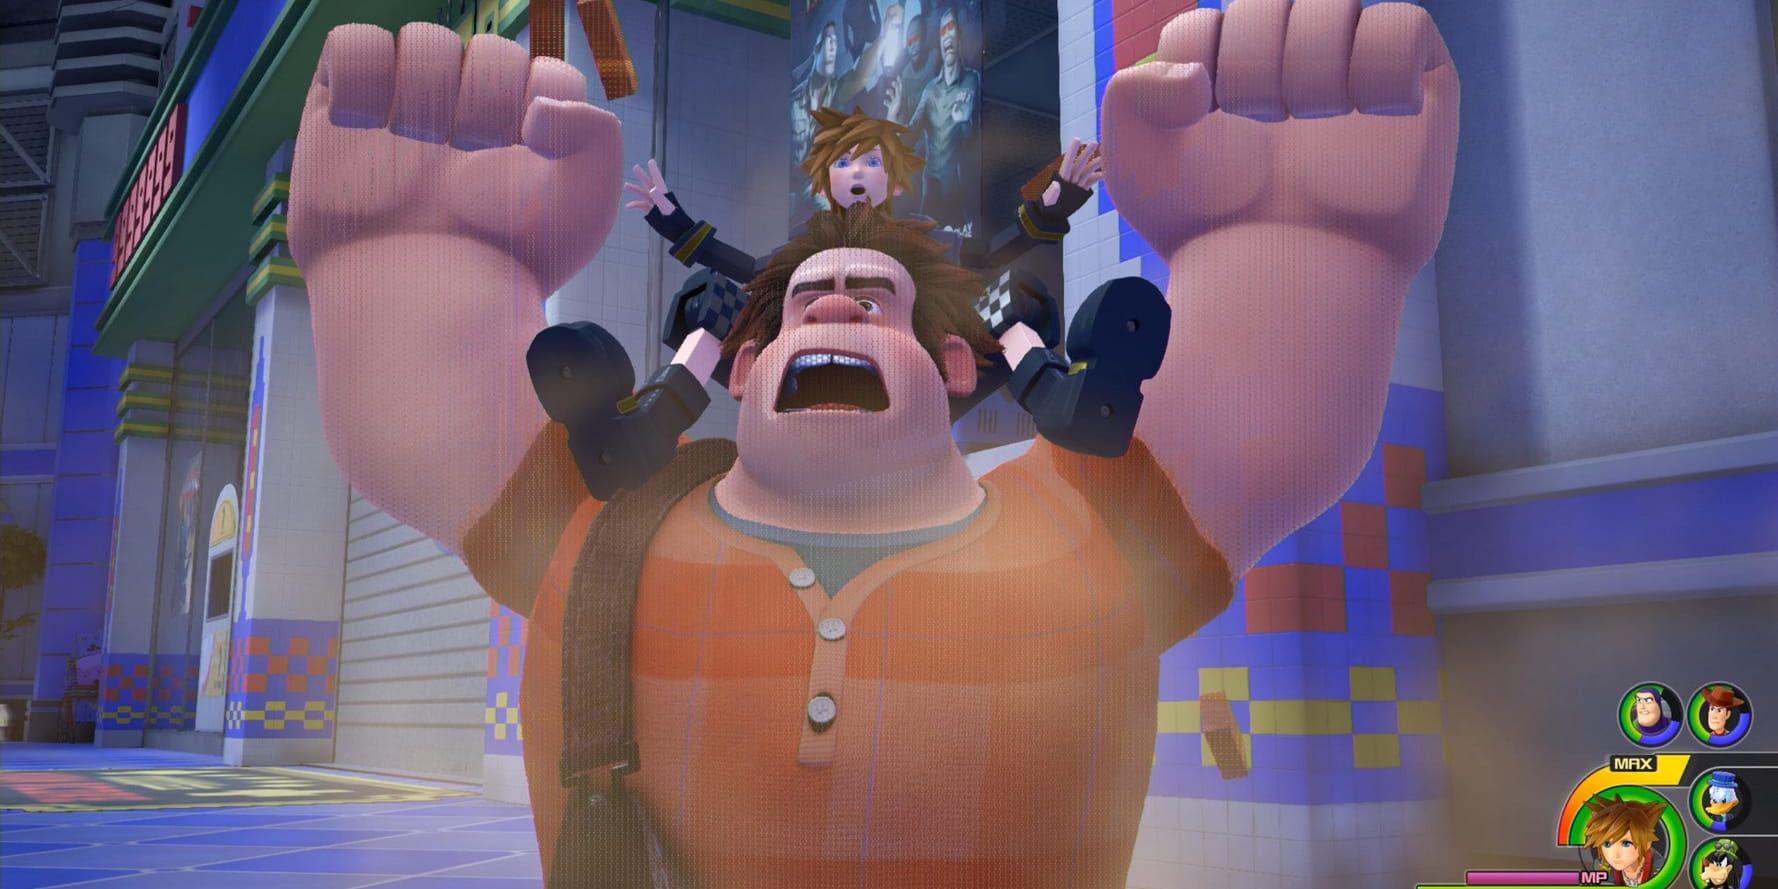 Figurer från Disney och Square Enix världar möts i kommande "Kingdom hearts III". Pressbild.